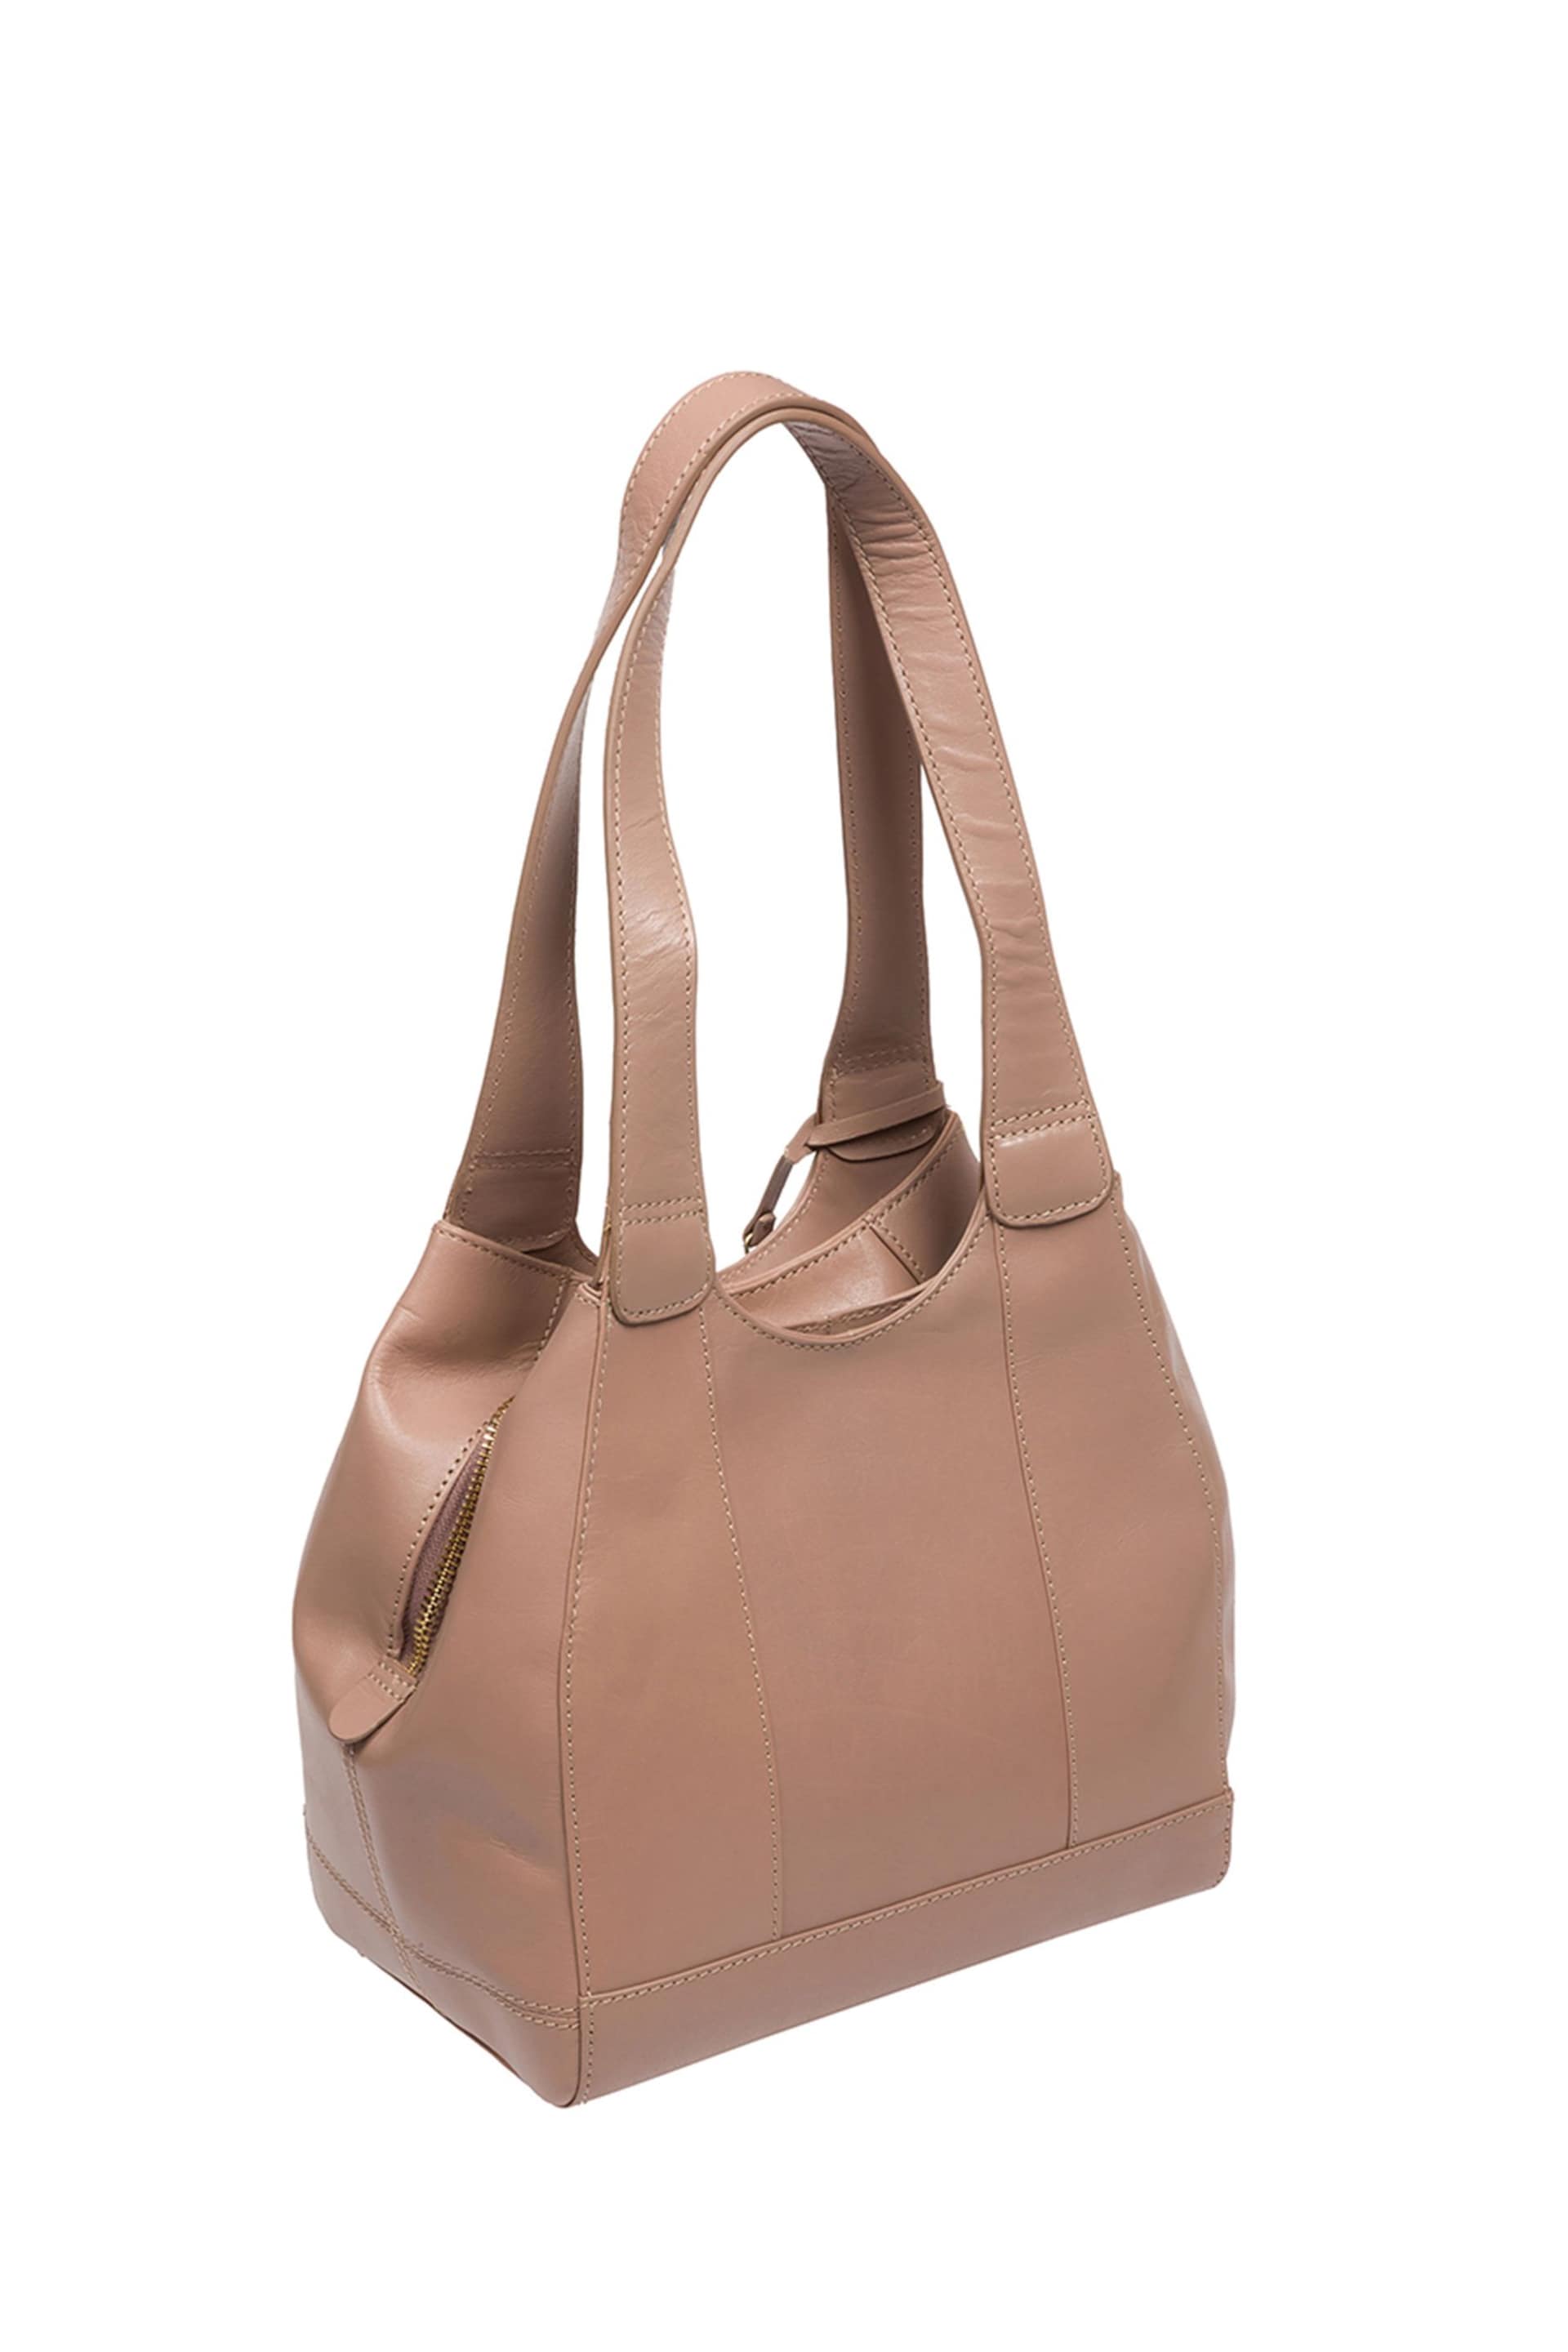 Conkca Juliet Handbag - Image 4 of 8